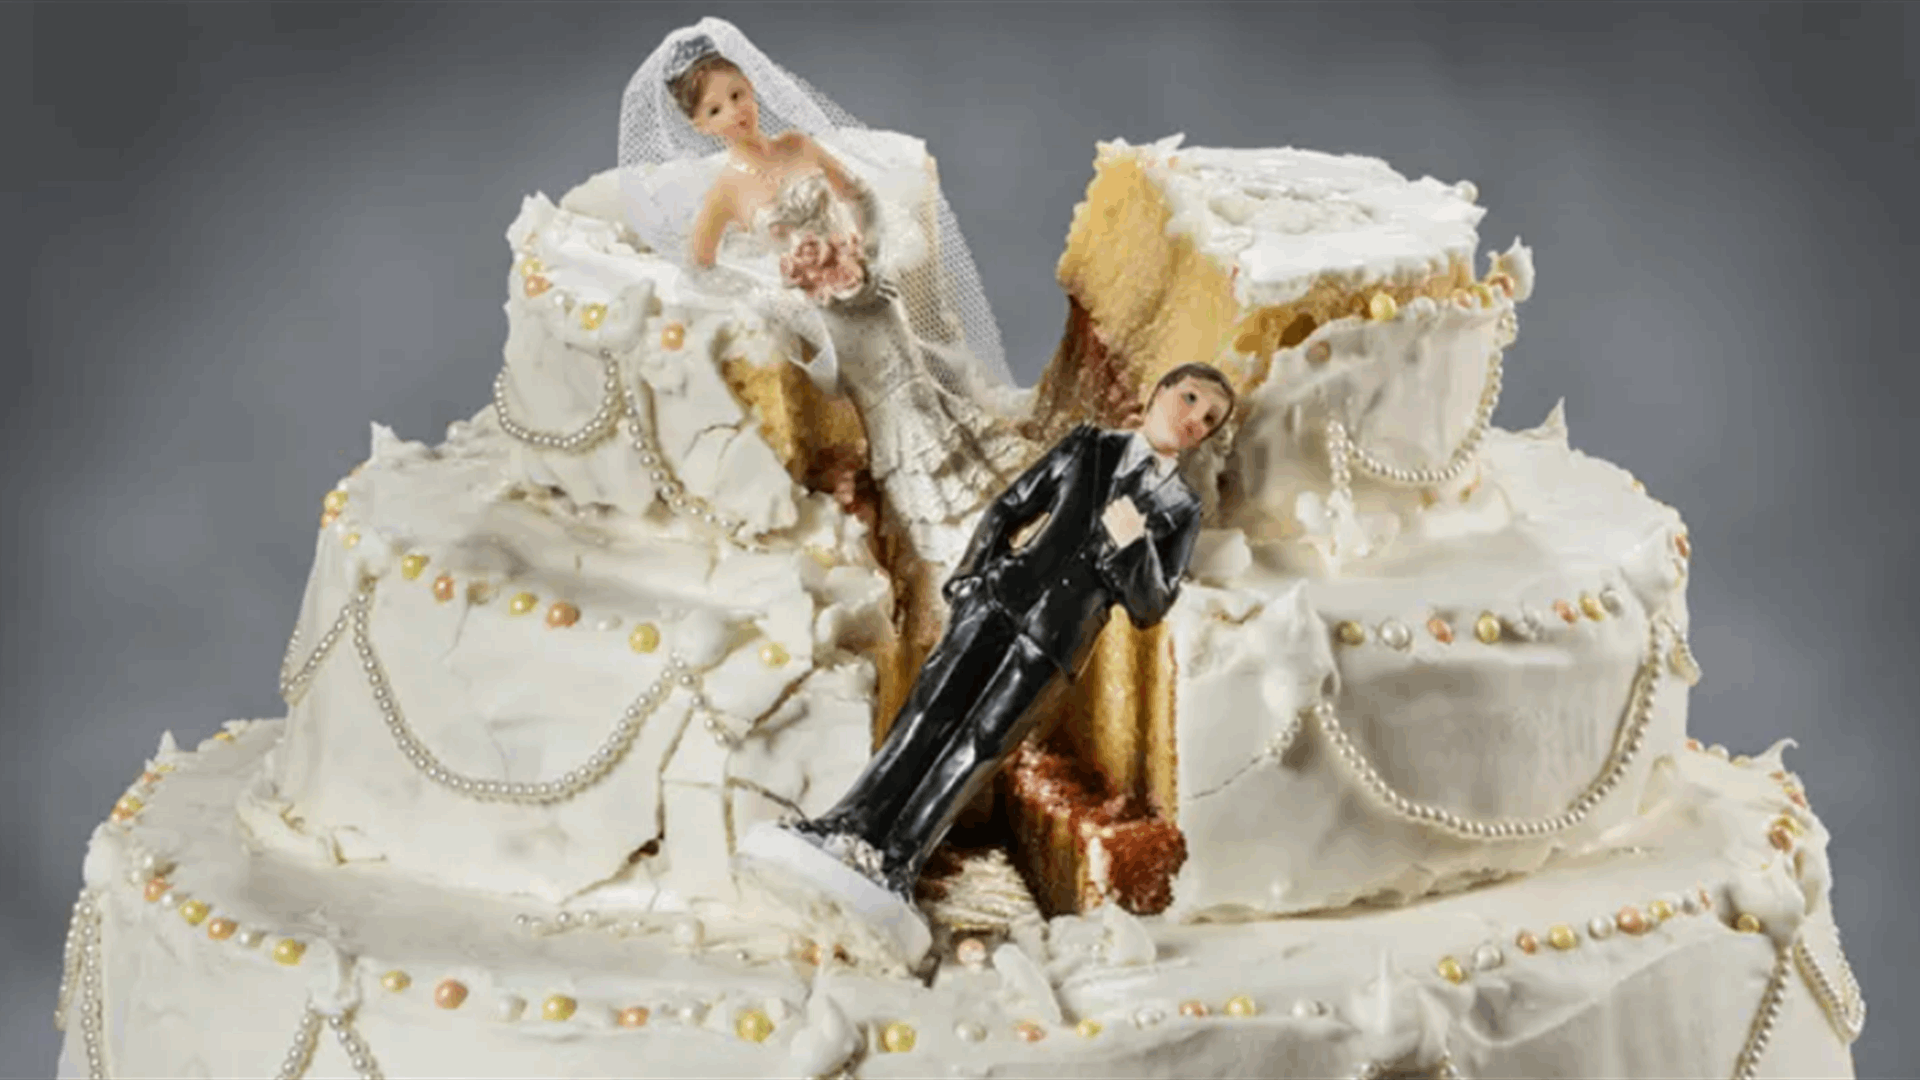 تركت حفل زفافها بعد أن حطم زوجها الكعكة في وجهها...اليكم ما حصل!